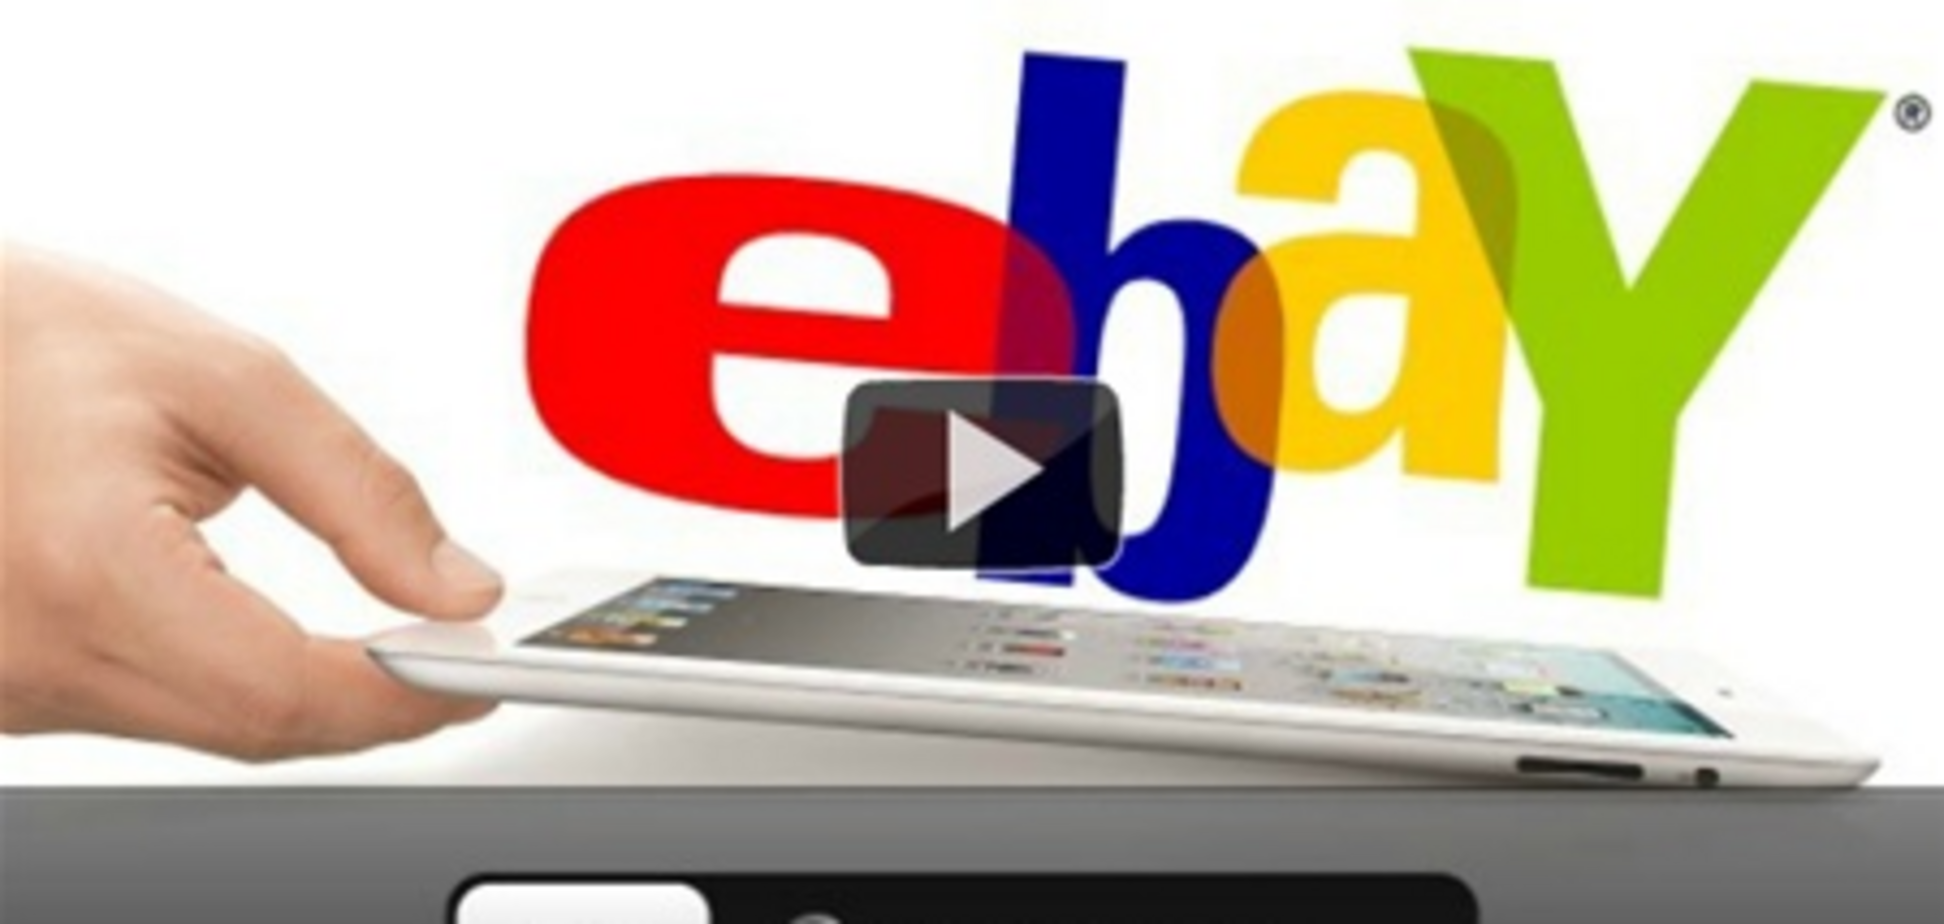 Как купить новый iPad дешевле на аукционе eBay – инструкция  